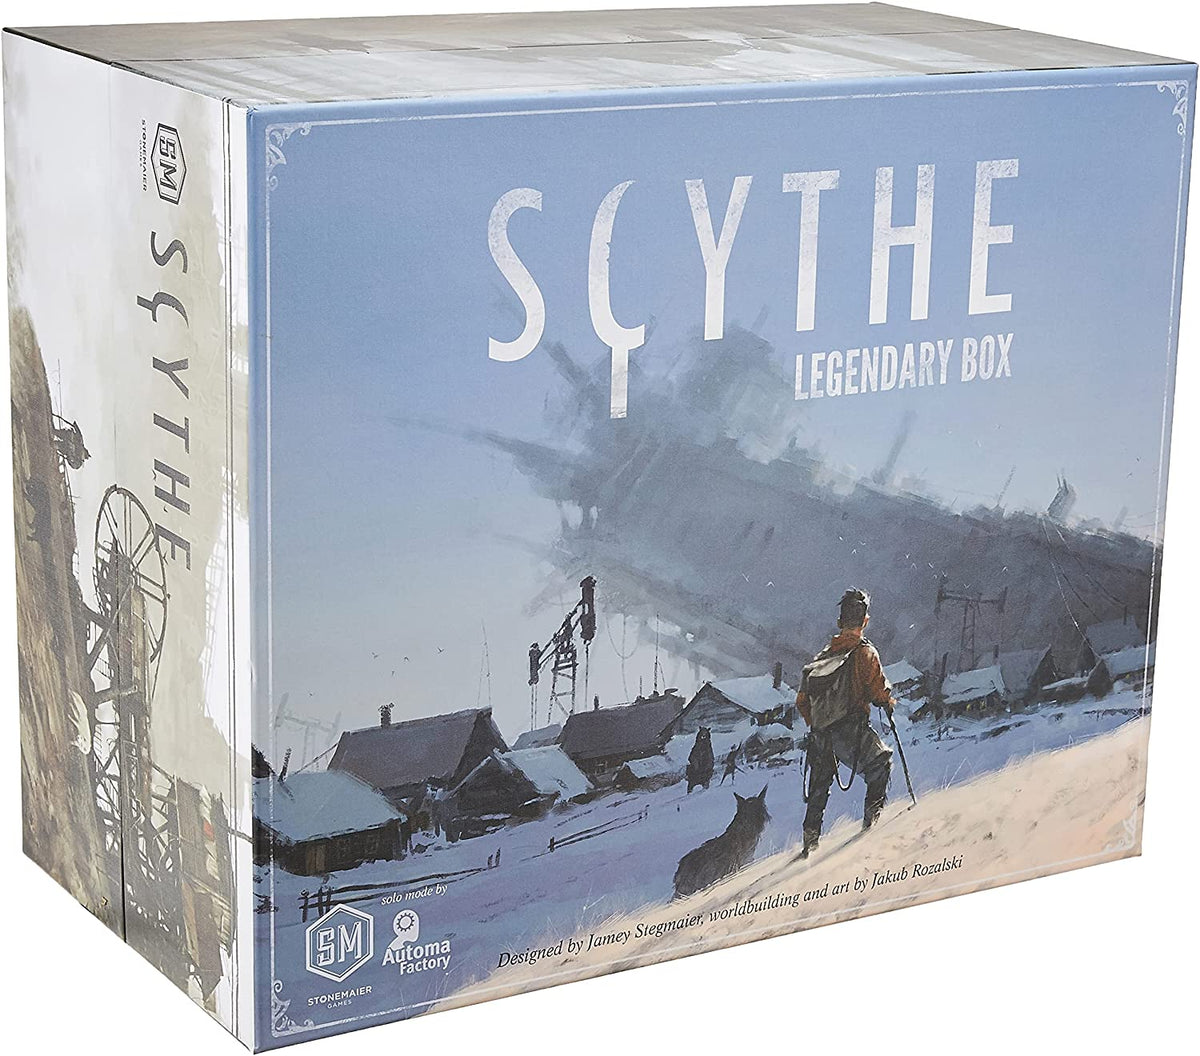 Scythe: Legendary Box - Third Eye